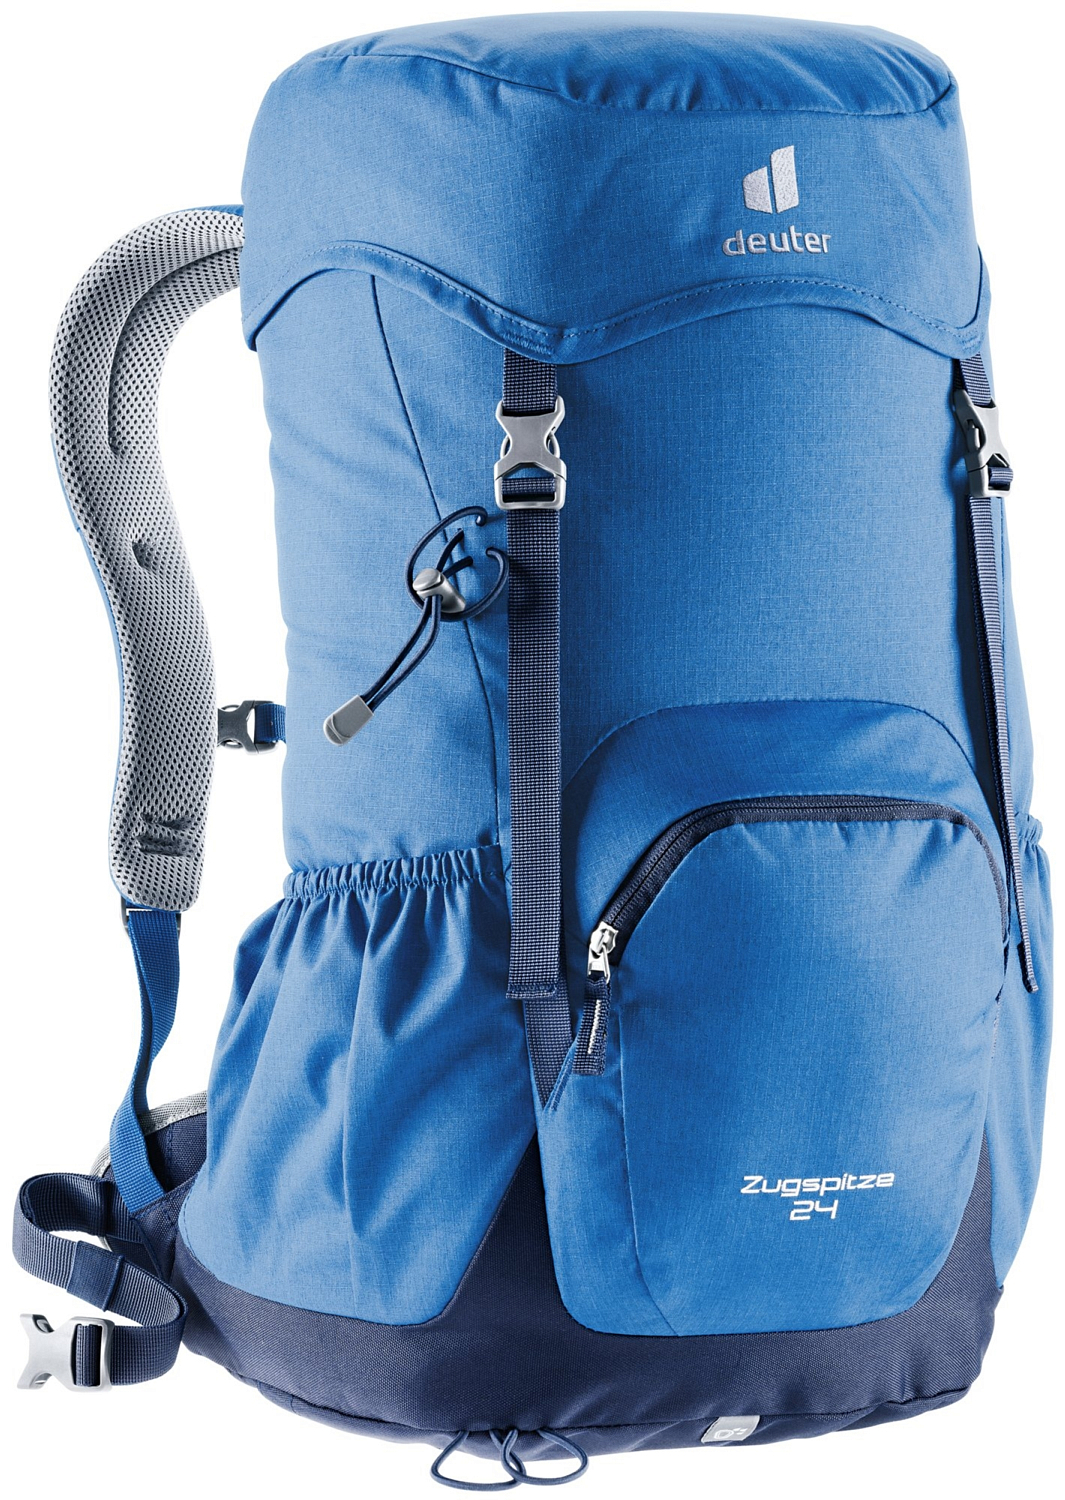 Туристические рюкзаки легкие Рюкзак Deuter Zugspitze 24 (2021) be599b06037683e1697fd658ccfad40e.jpeg